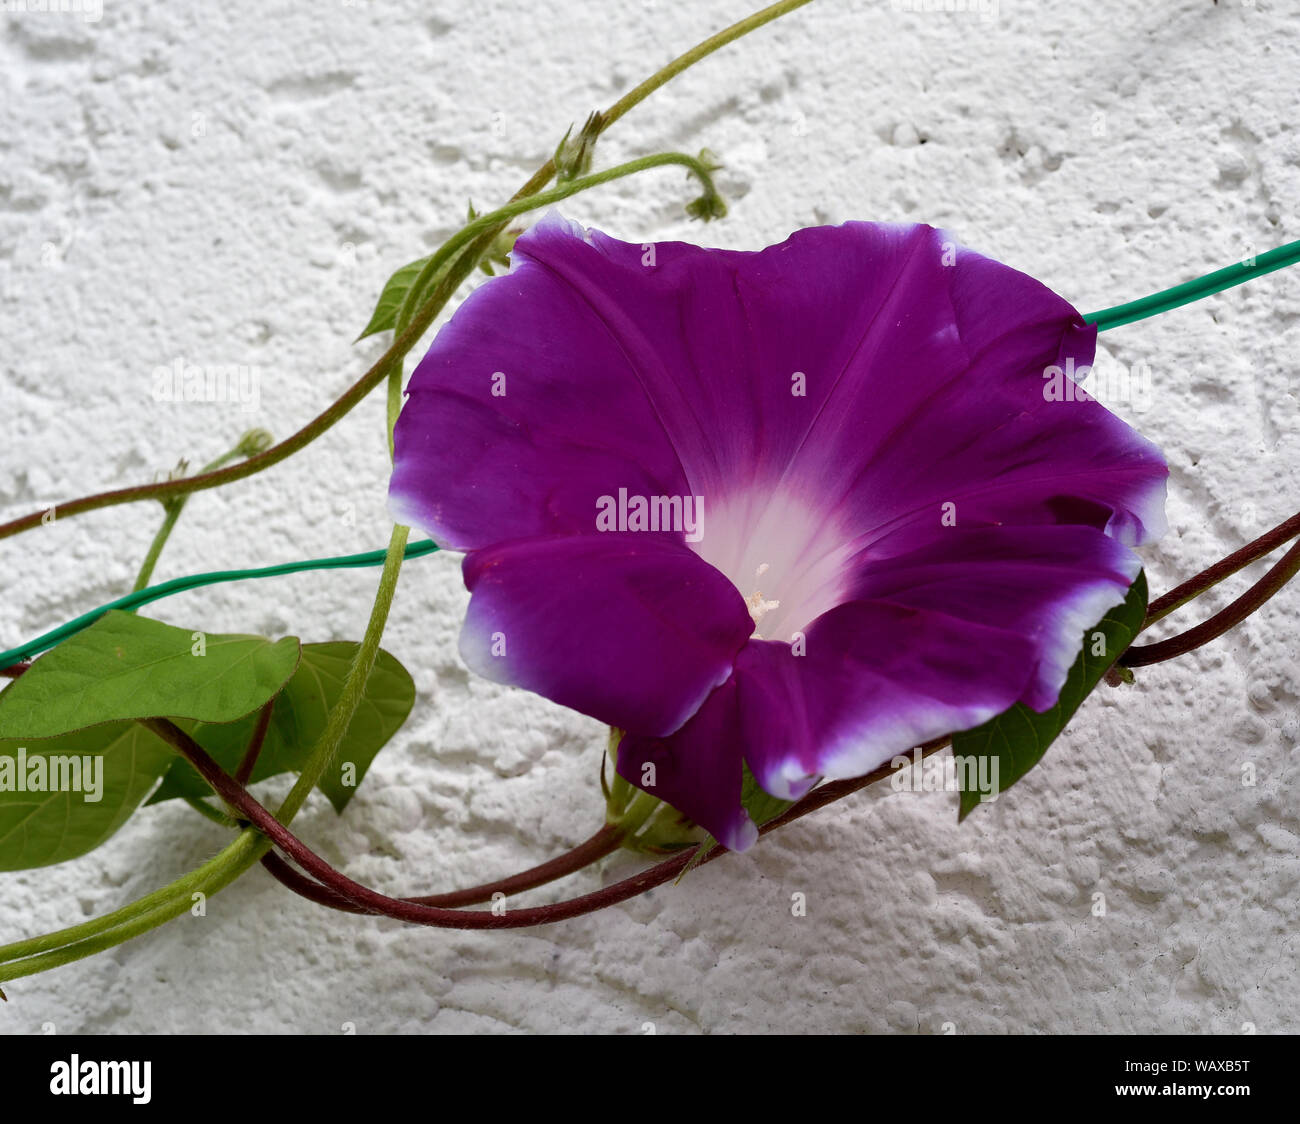 Trichterwinde, Dreifarbige Prunkwinde, Ipomoea purpurea, ist eine schoene Kletterpflanze mit verschiedenen farbigen, trichterfoermigen  Blueten. Morni Stock Photo